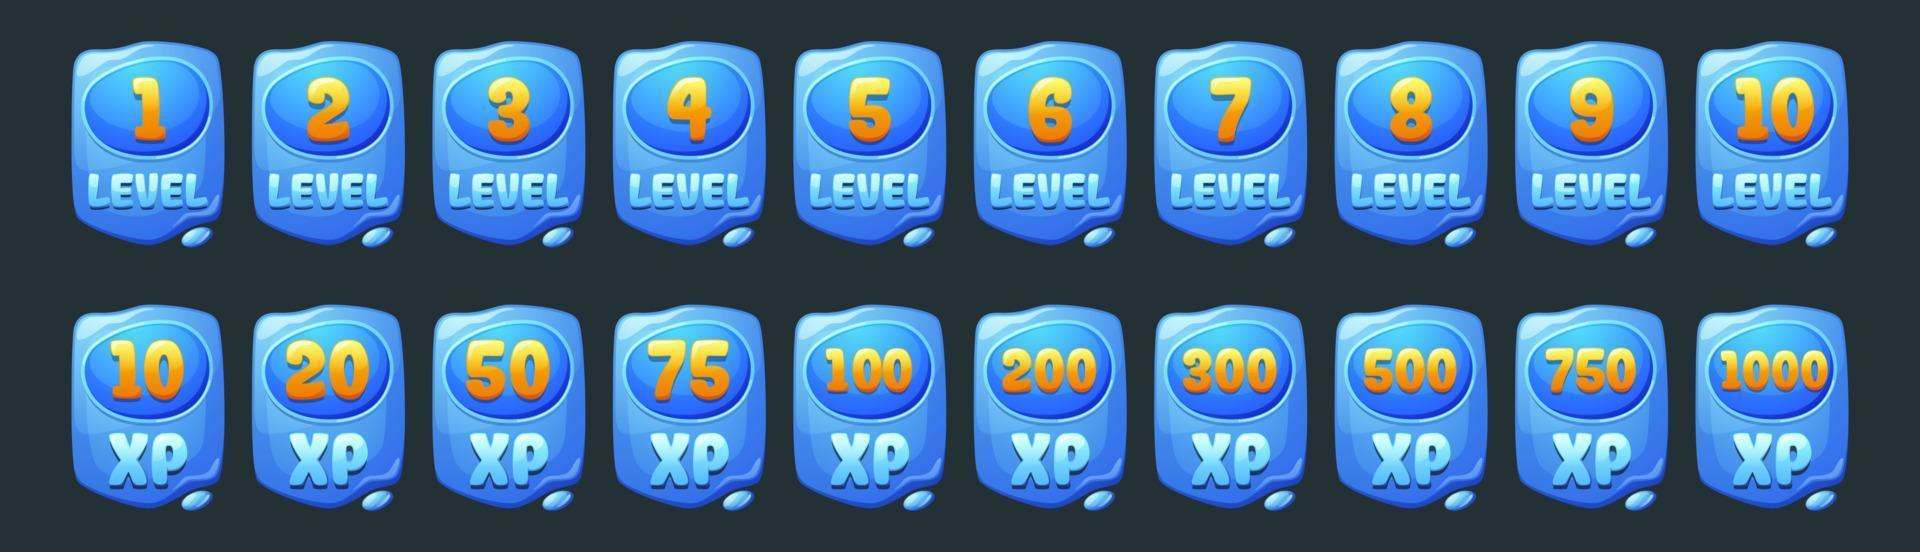 conjunto de iconos de interfaz de usuario de nivel de juego de agua, pancartas azules vector